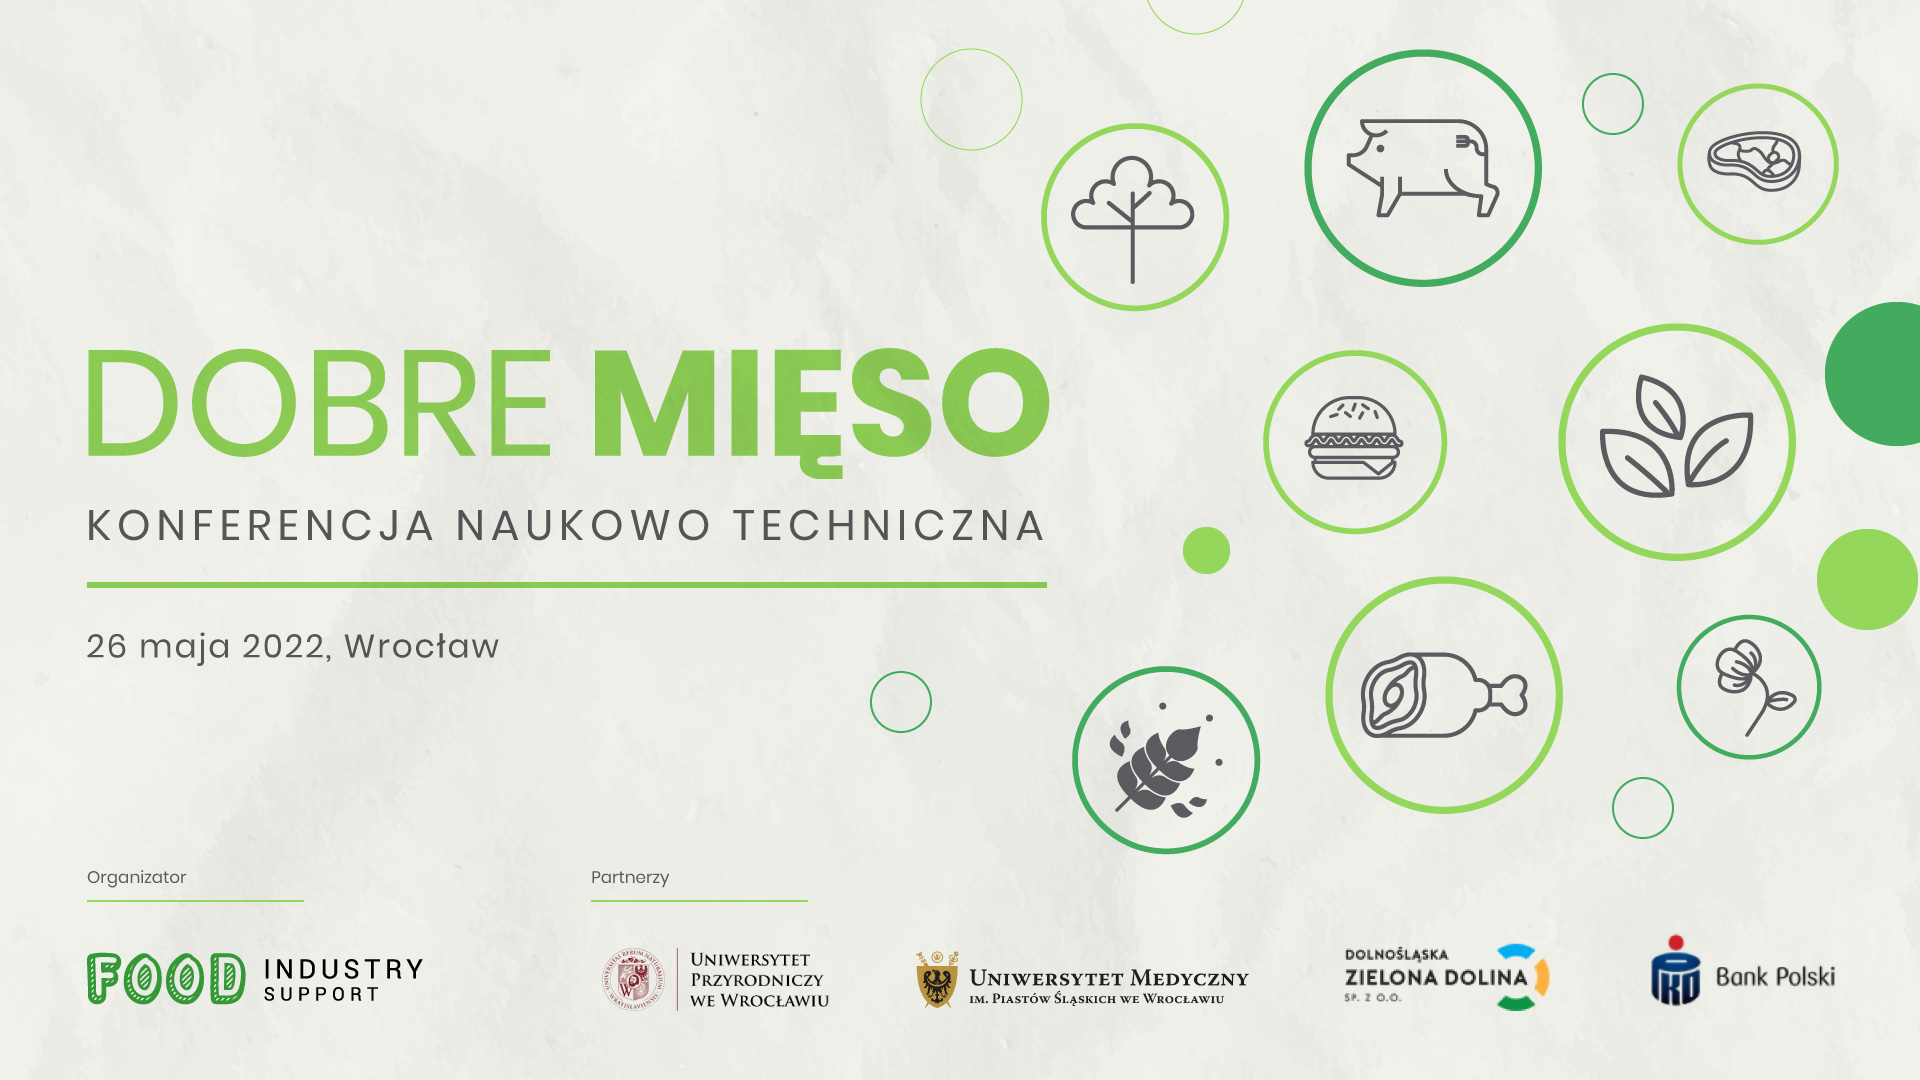 Dobre mięso - konferencja naukowo techniczna, 26 maja 2022, Wrocław_organizator_Food_Industry_Support